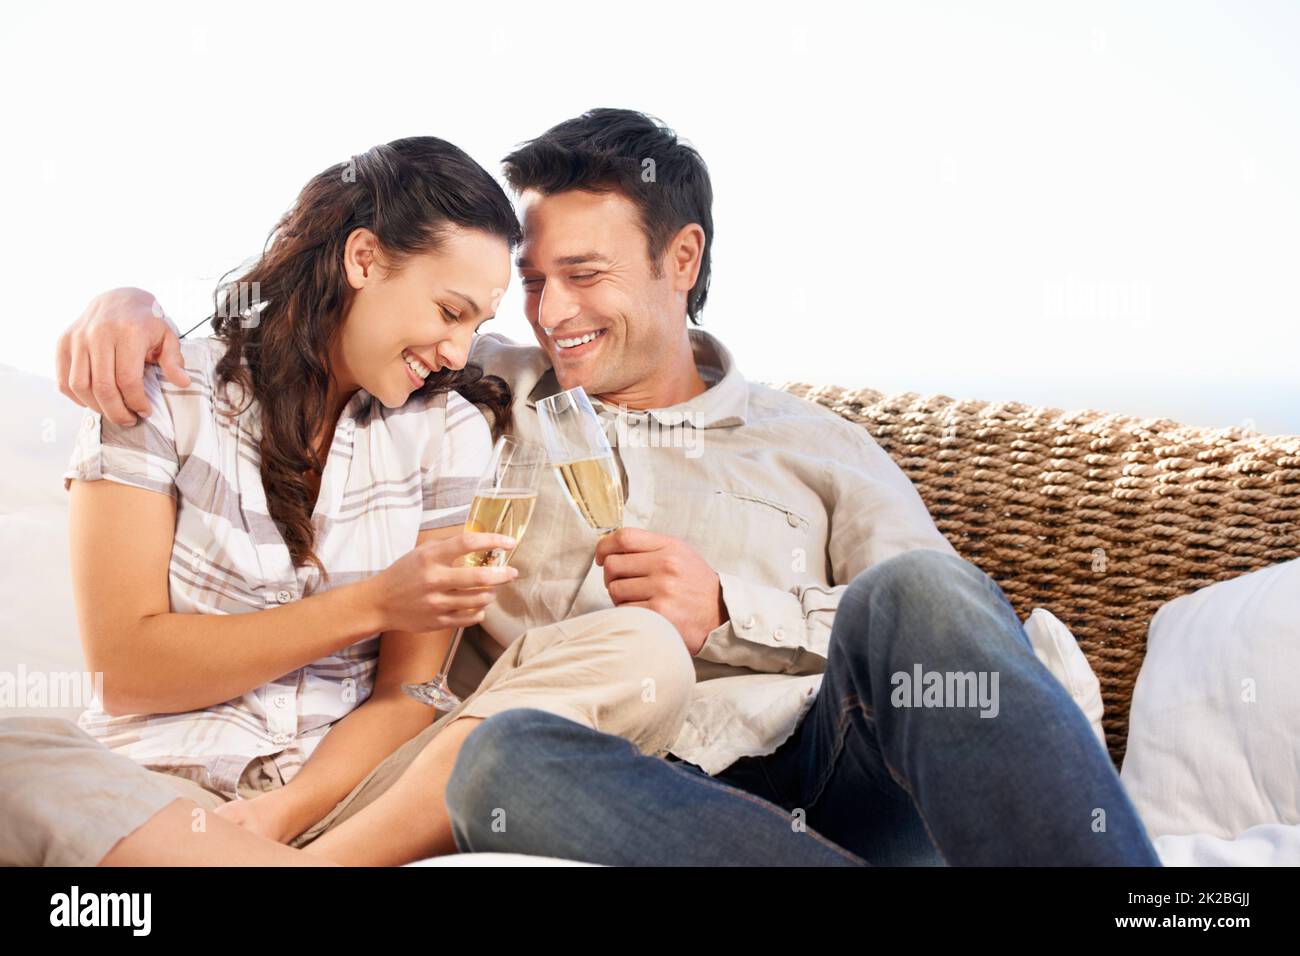 Heureux ensemble. Un jeune couple souriant et buvant du champagne. Banque D'Images